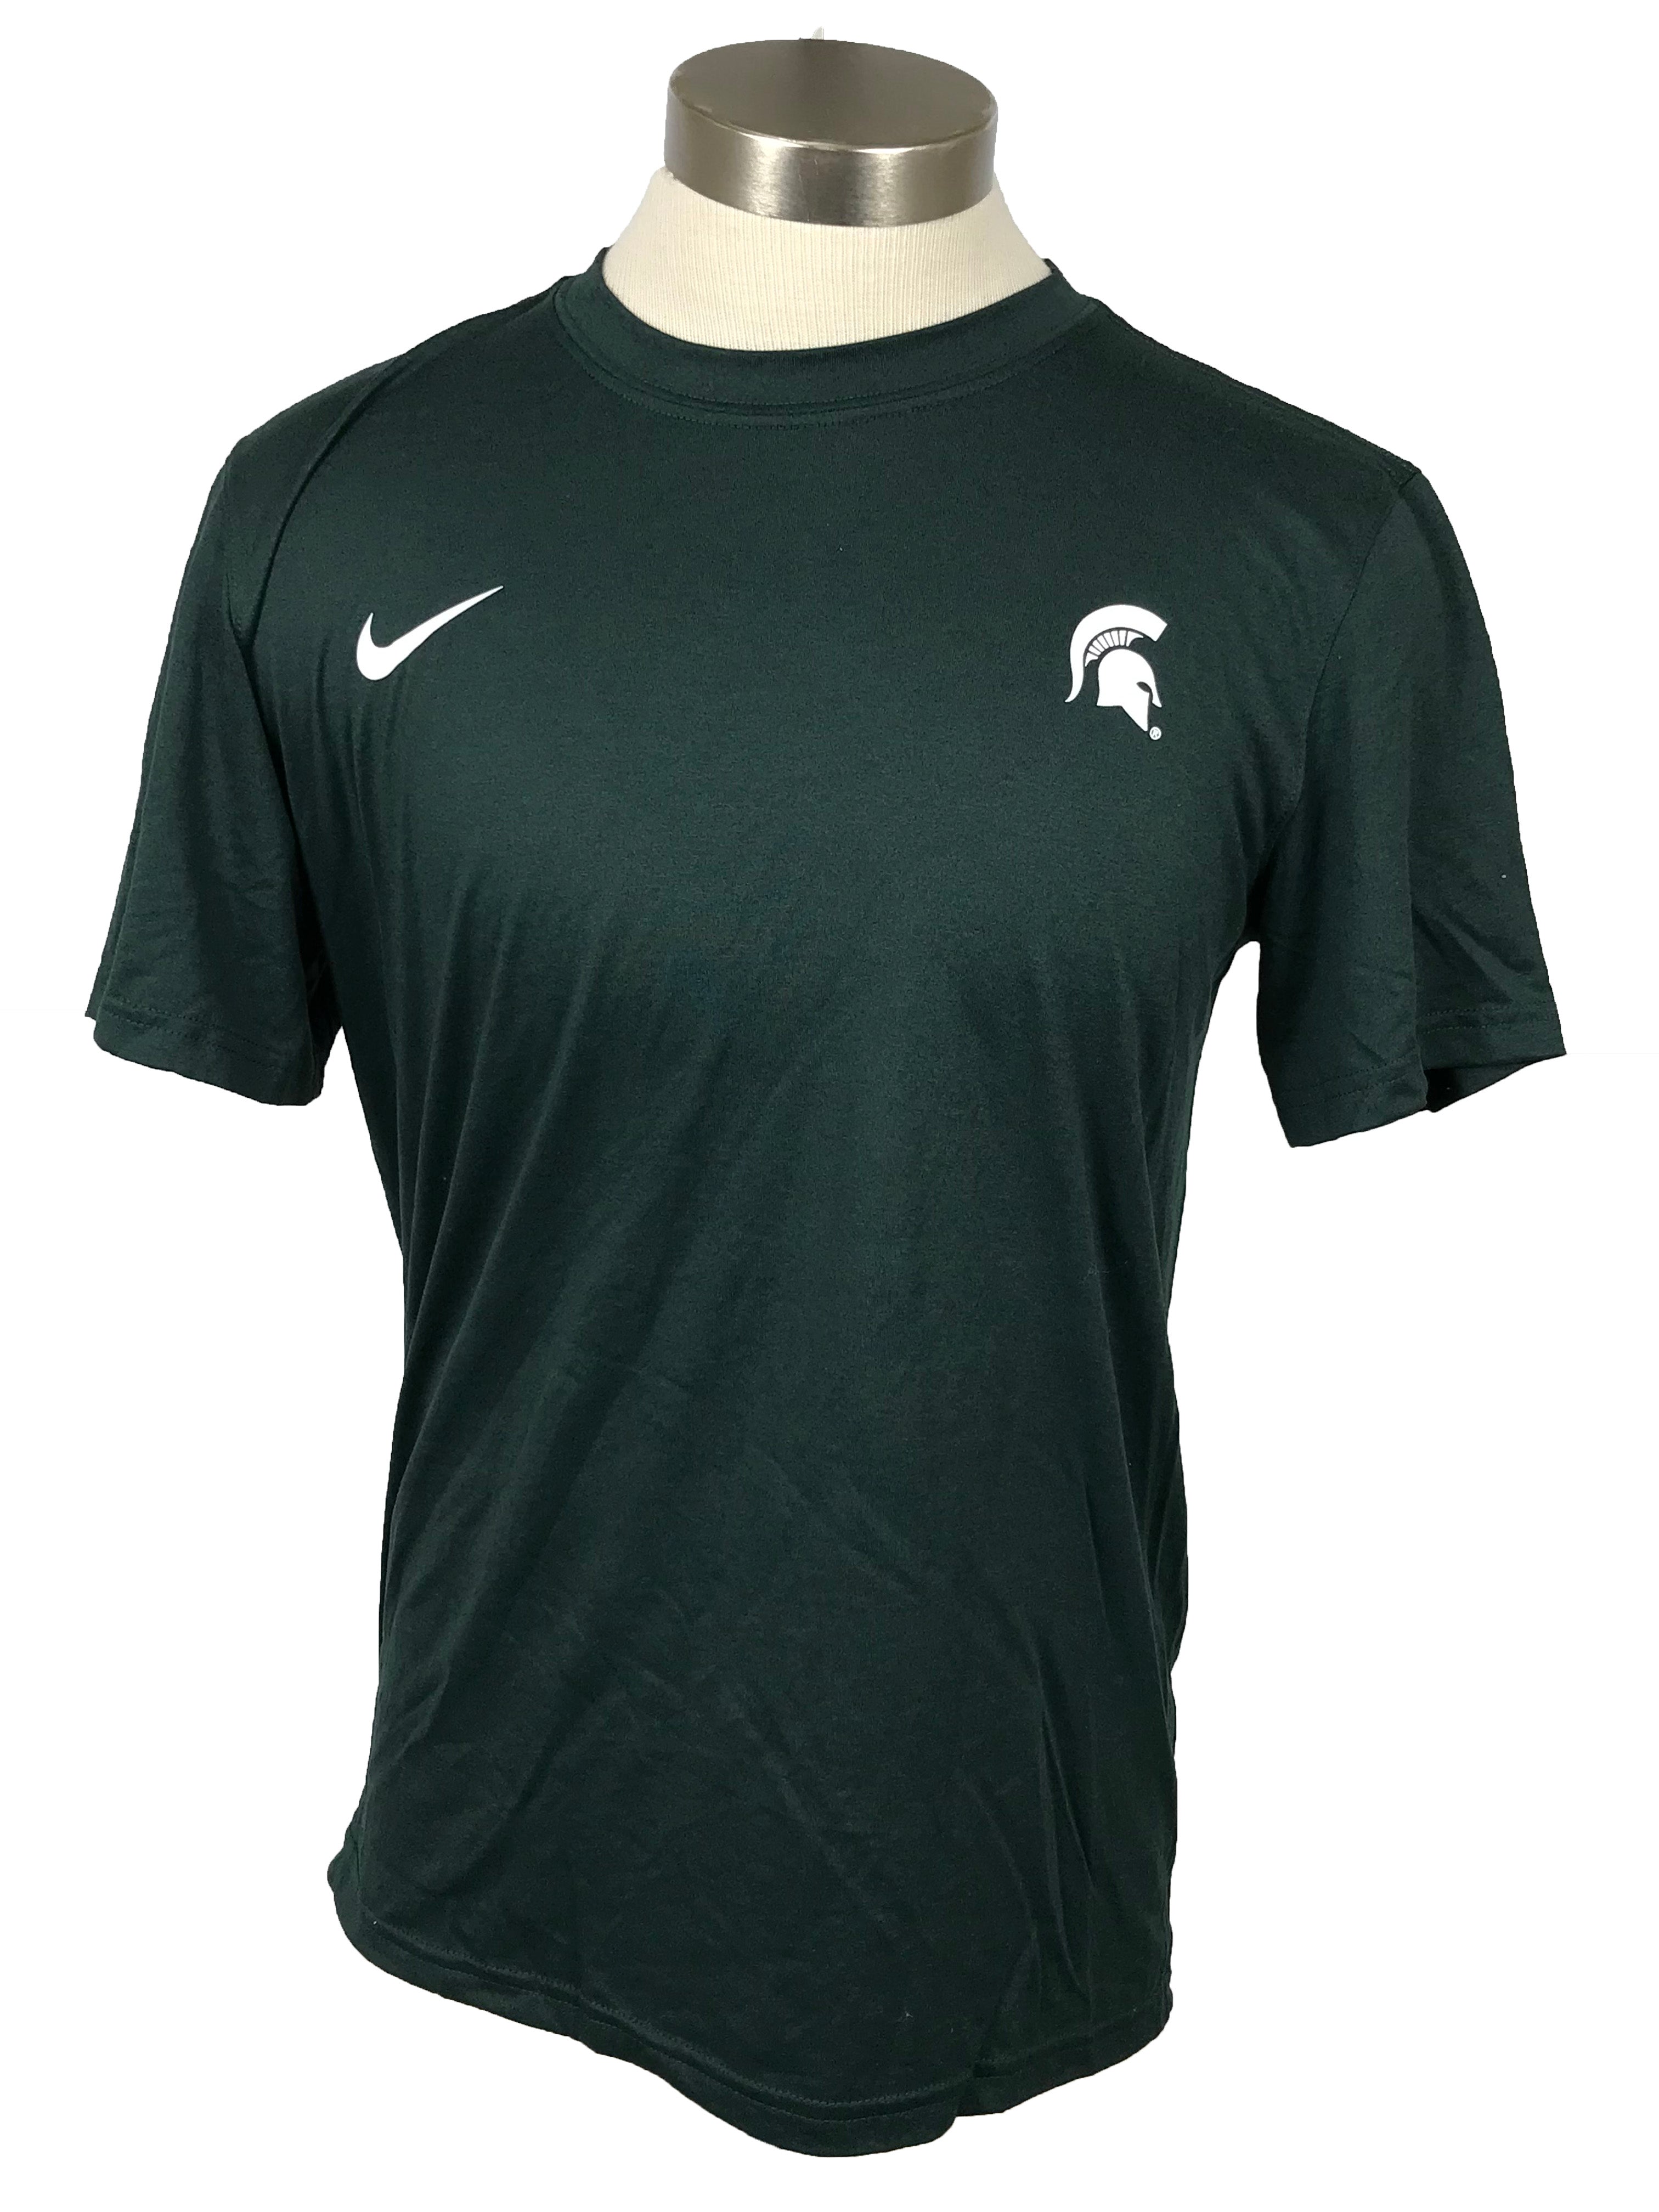 Nike Green MSU Dri-Fit T-Shirt Men's Size Medium